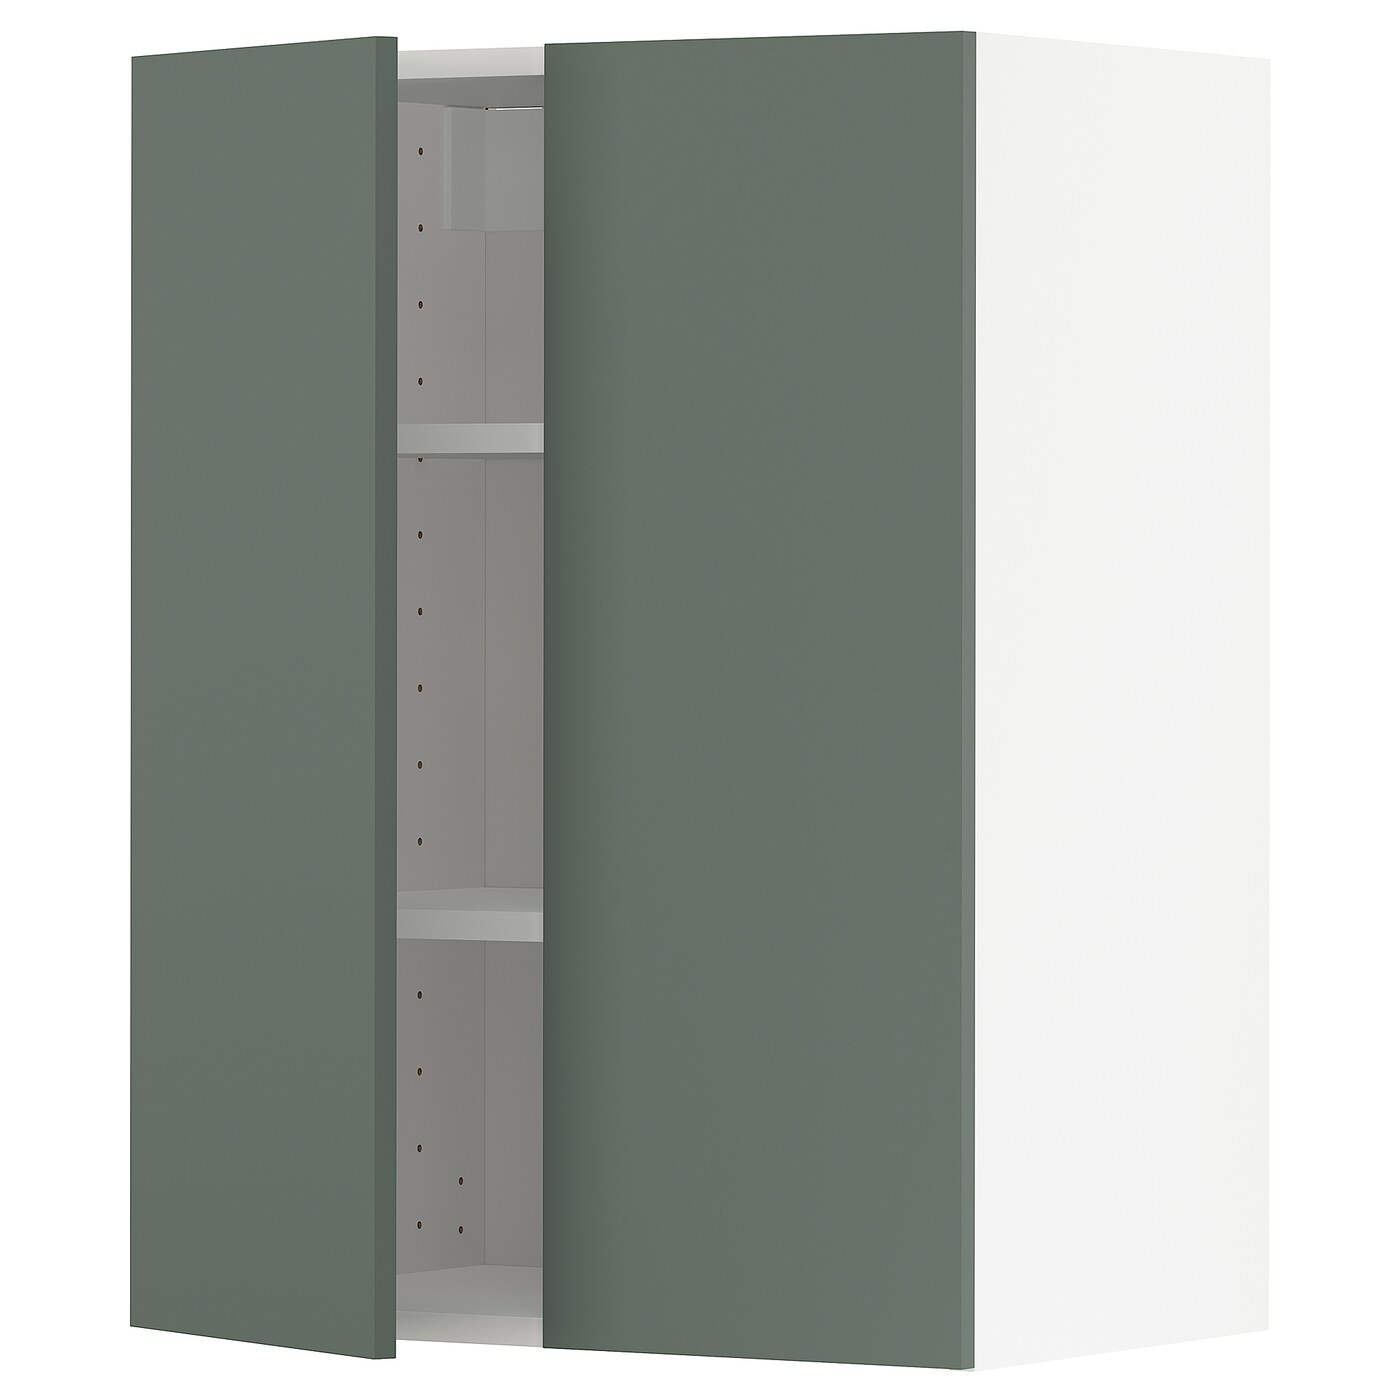 Навесной шкаф с полкой - METOD IKEA/ МЕТОД ИКЕА, 80х60 см, белый/темно-зеленый